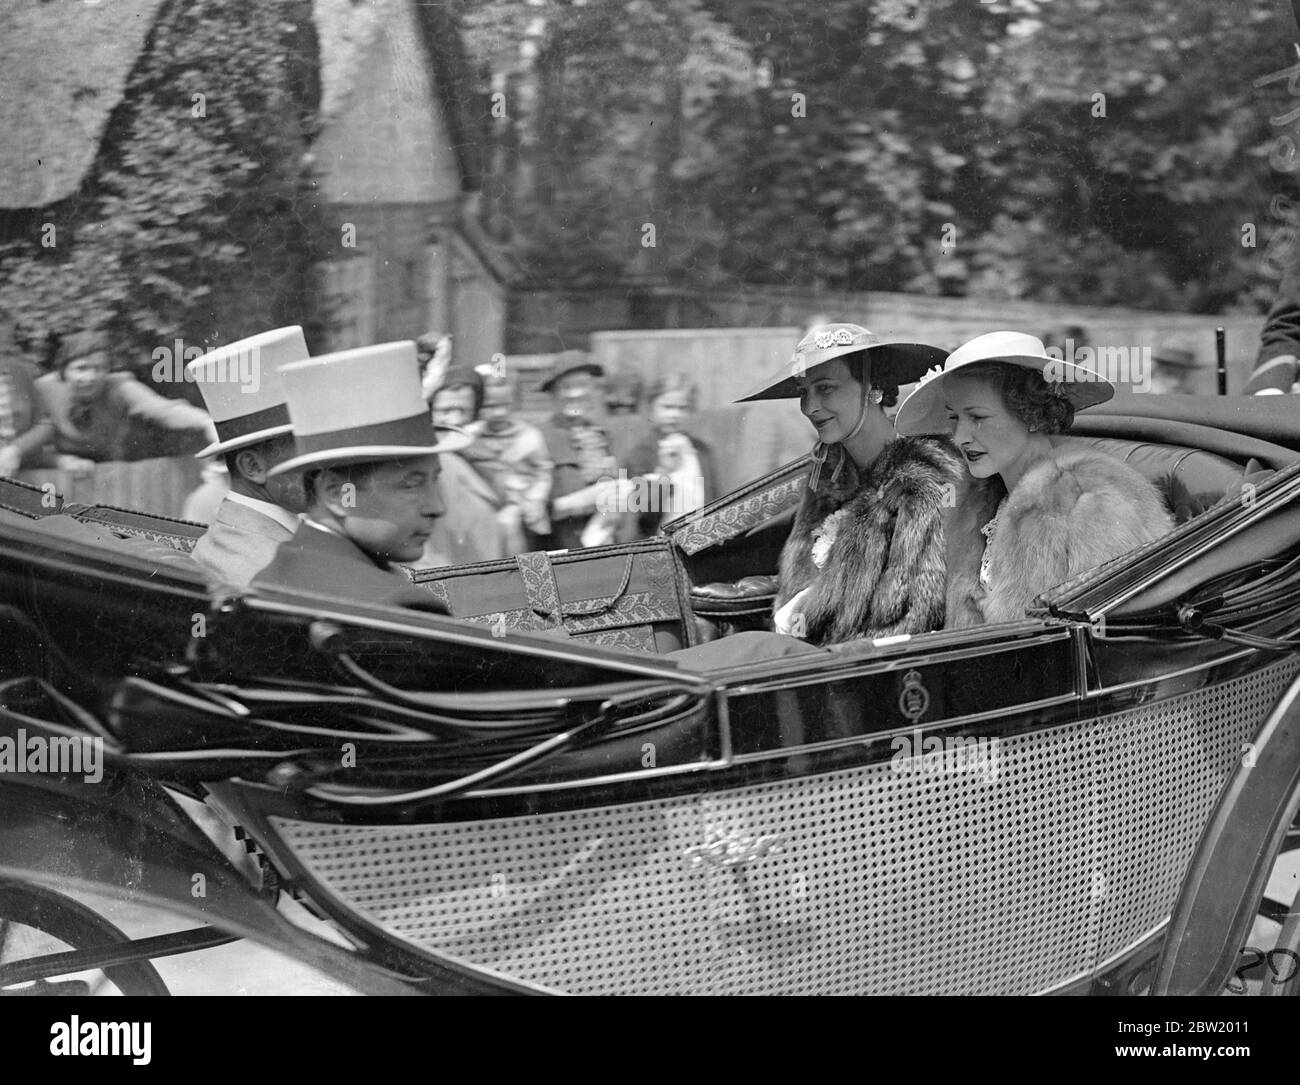 Herzogin von Kent und Herzogin von Norfolk in Ascot am Tag des Gold Cup. Die Herzogin von Kent begleitete den König und die Königin und andere Mitglieder der königlichen Familie zu Ascot am Gold Cup Tag. Die Herzogin kam mit der Herzogin von Norfolk. Foto zeigt: Die Herzogin von Kent Ankunft in Ascot mit der Herzogin von Norfolk. Die Herzogin von Kent trägt einen riesigen unter dem Kinn gefesselt. 17 Juni 1937 Stockfoto